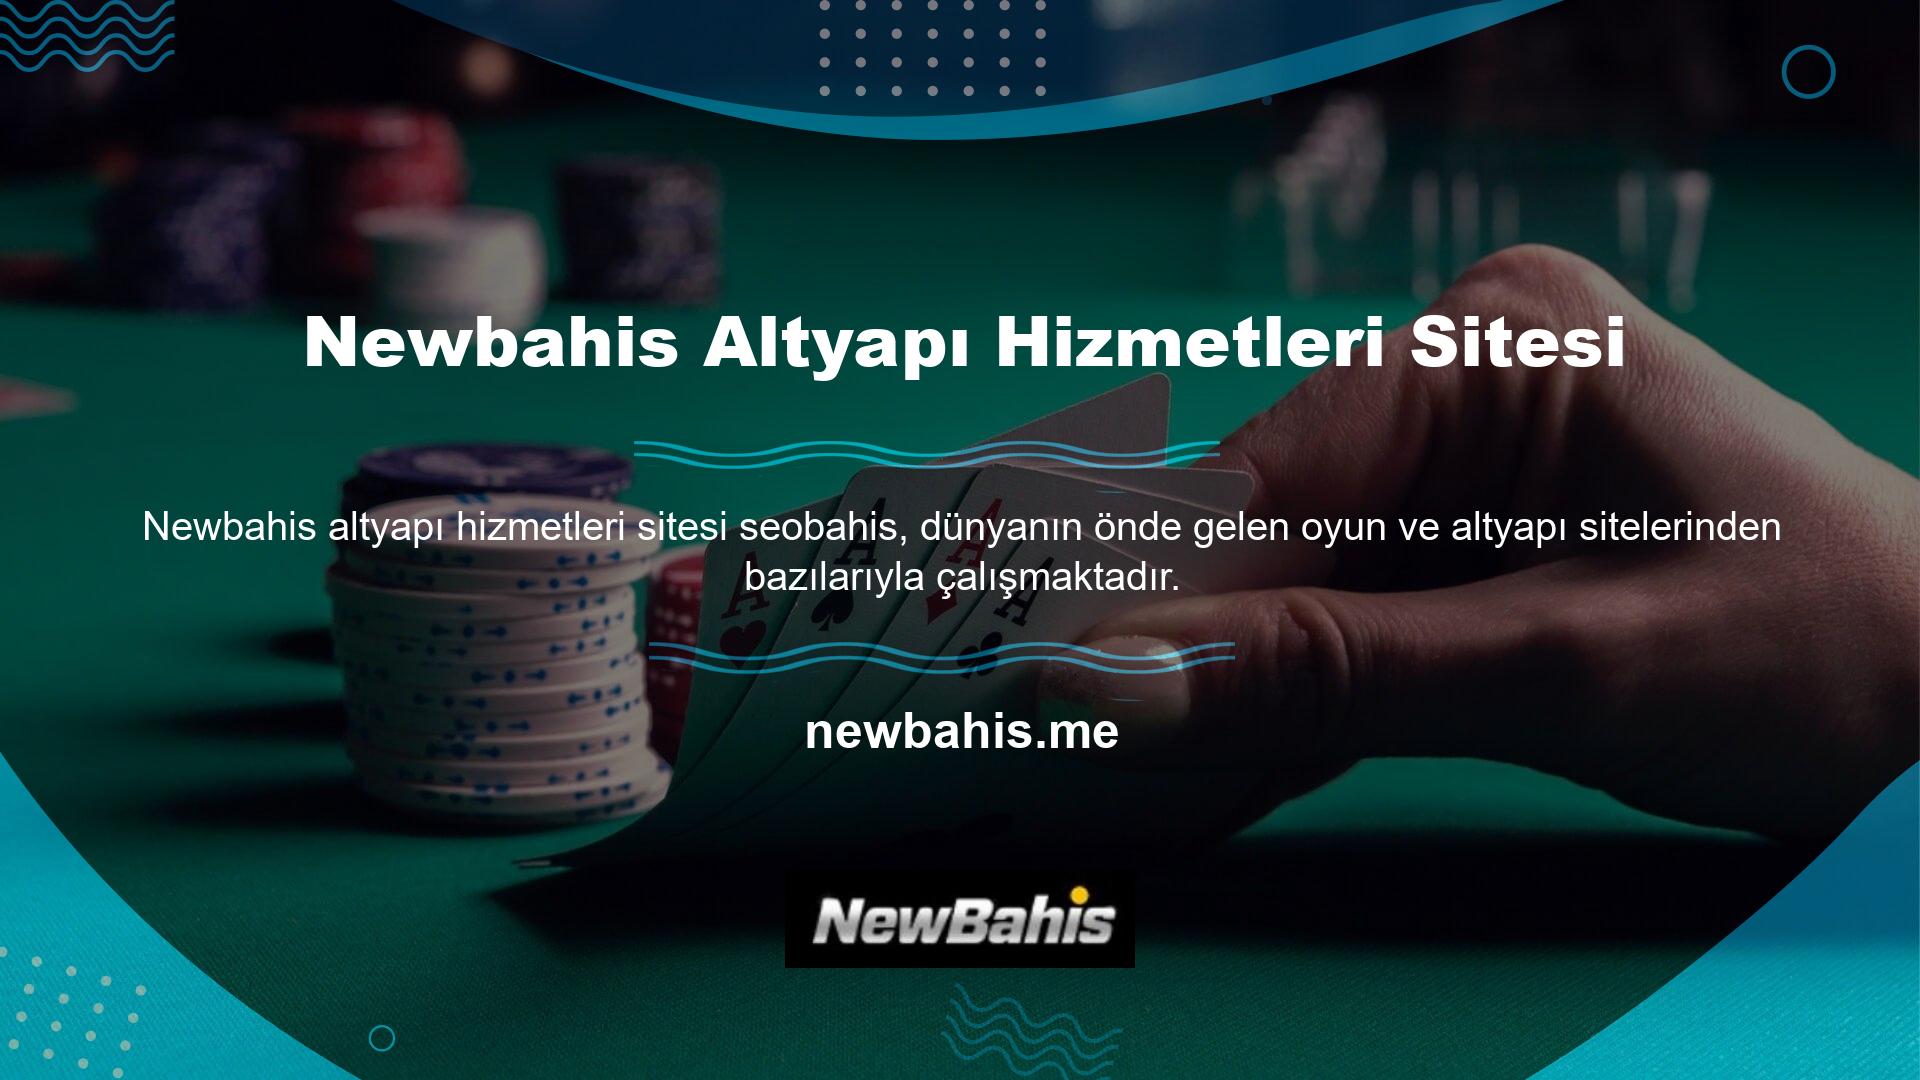 Newbahis slot web sitesine ürün sağlayan çok sayıda altyapı sitesi de bulunmaktadır